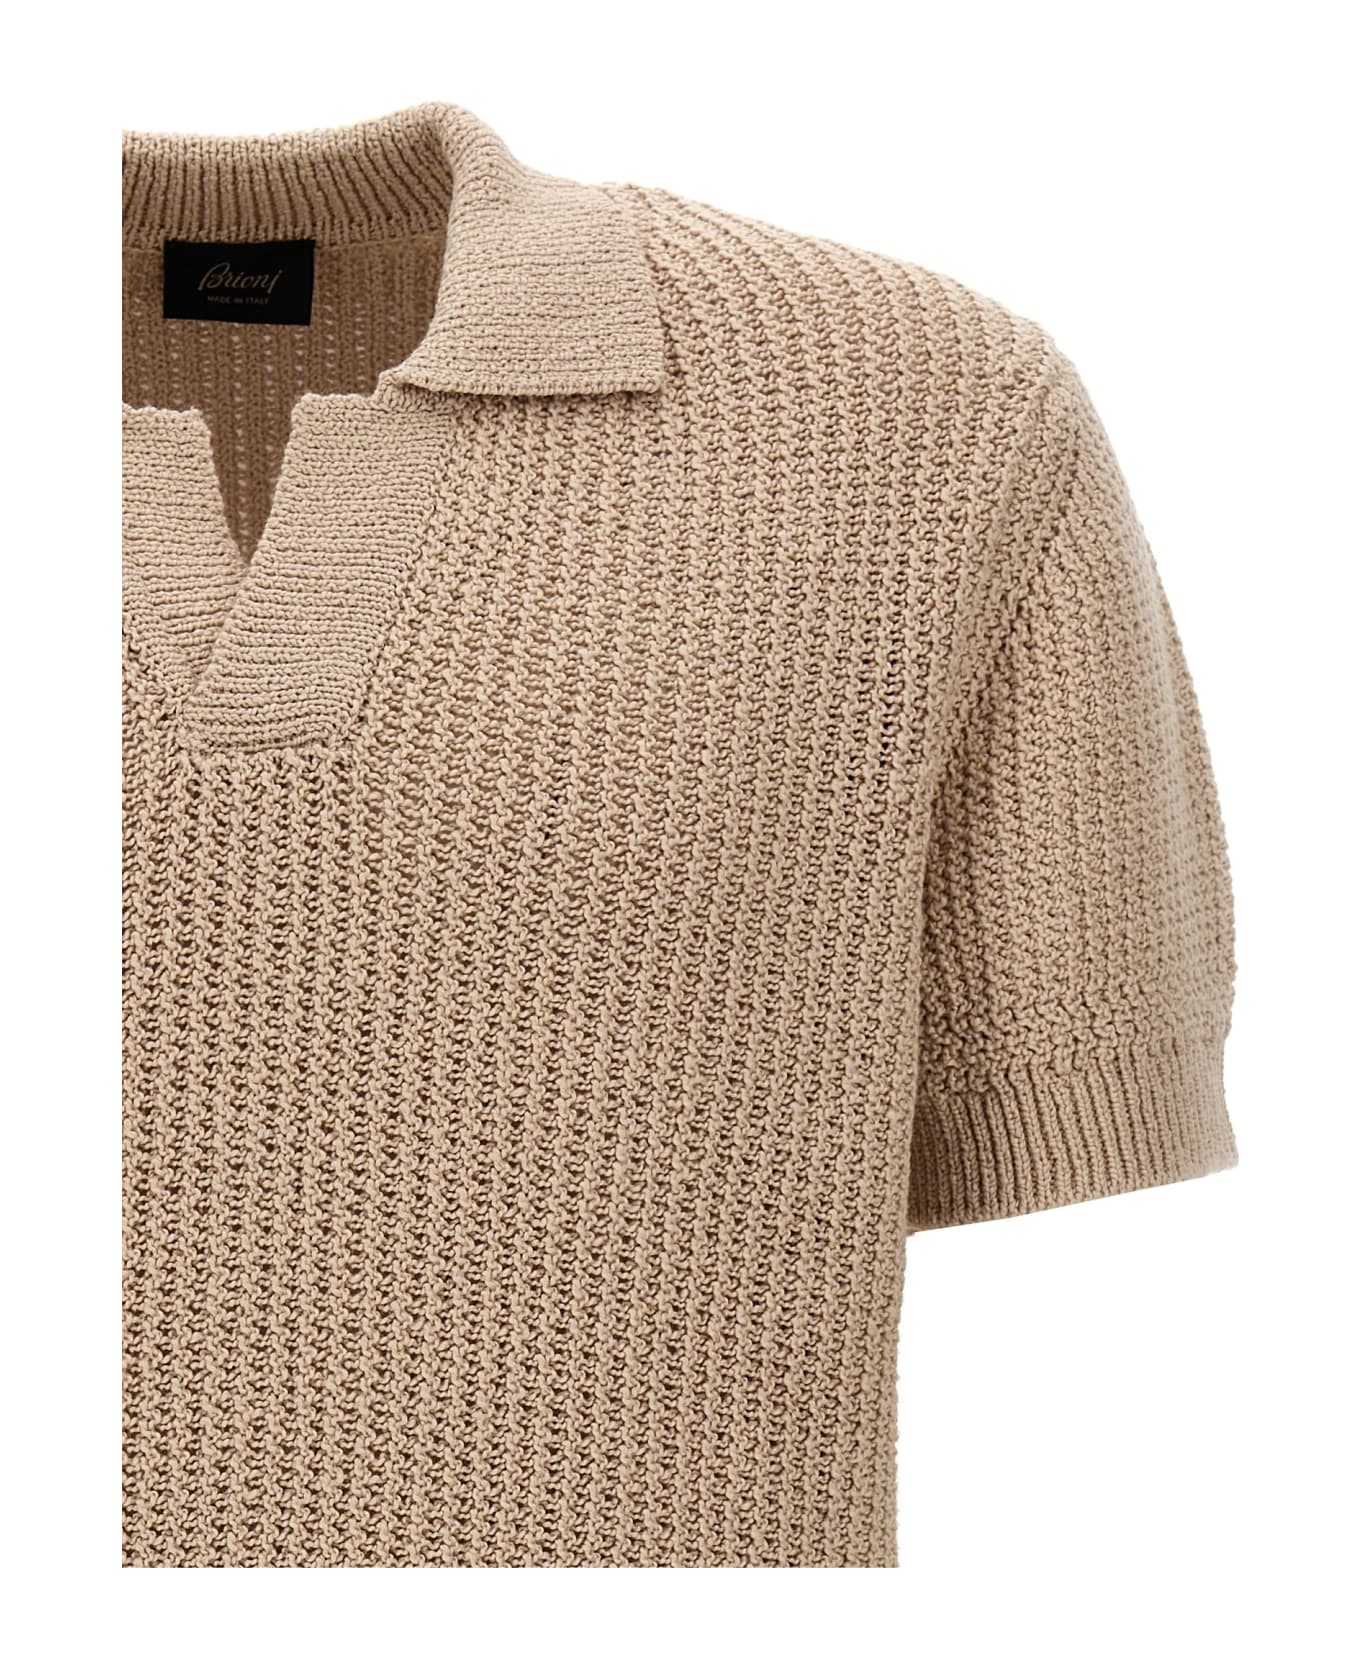 Brioni Knitted Polo Shirt - Beige ニットウェア